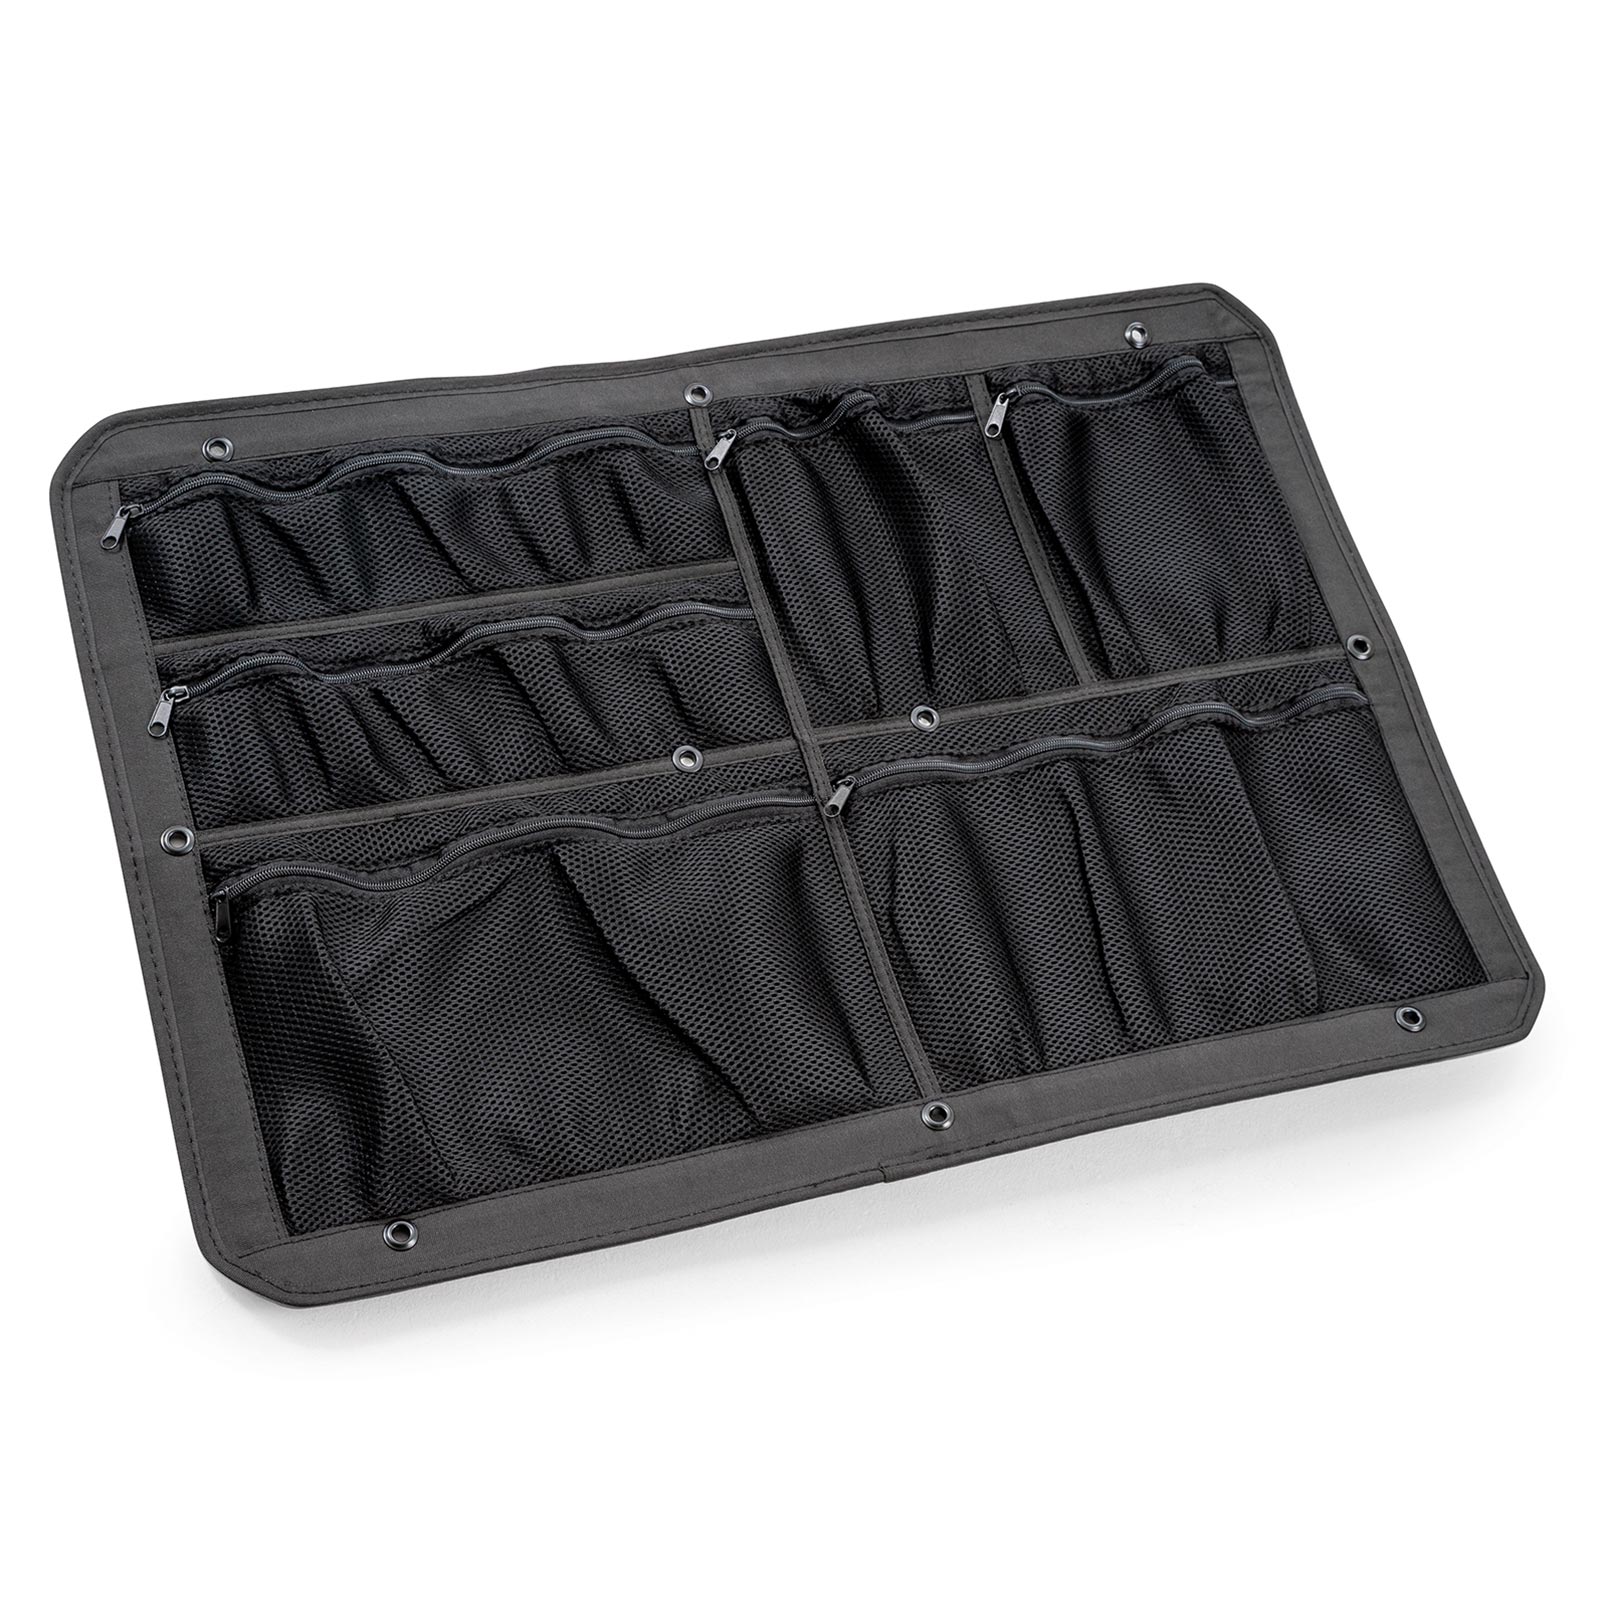 B&W Netz-Deckeltasche für Outdoor Cases, Typ 7800